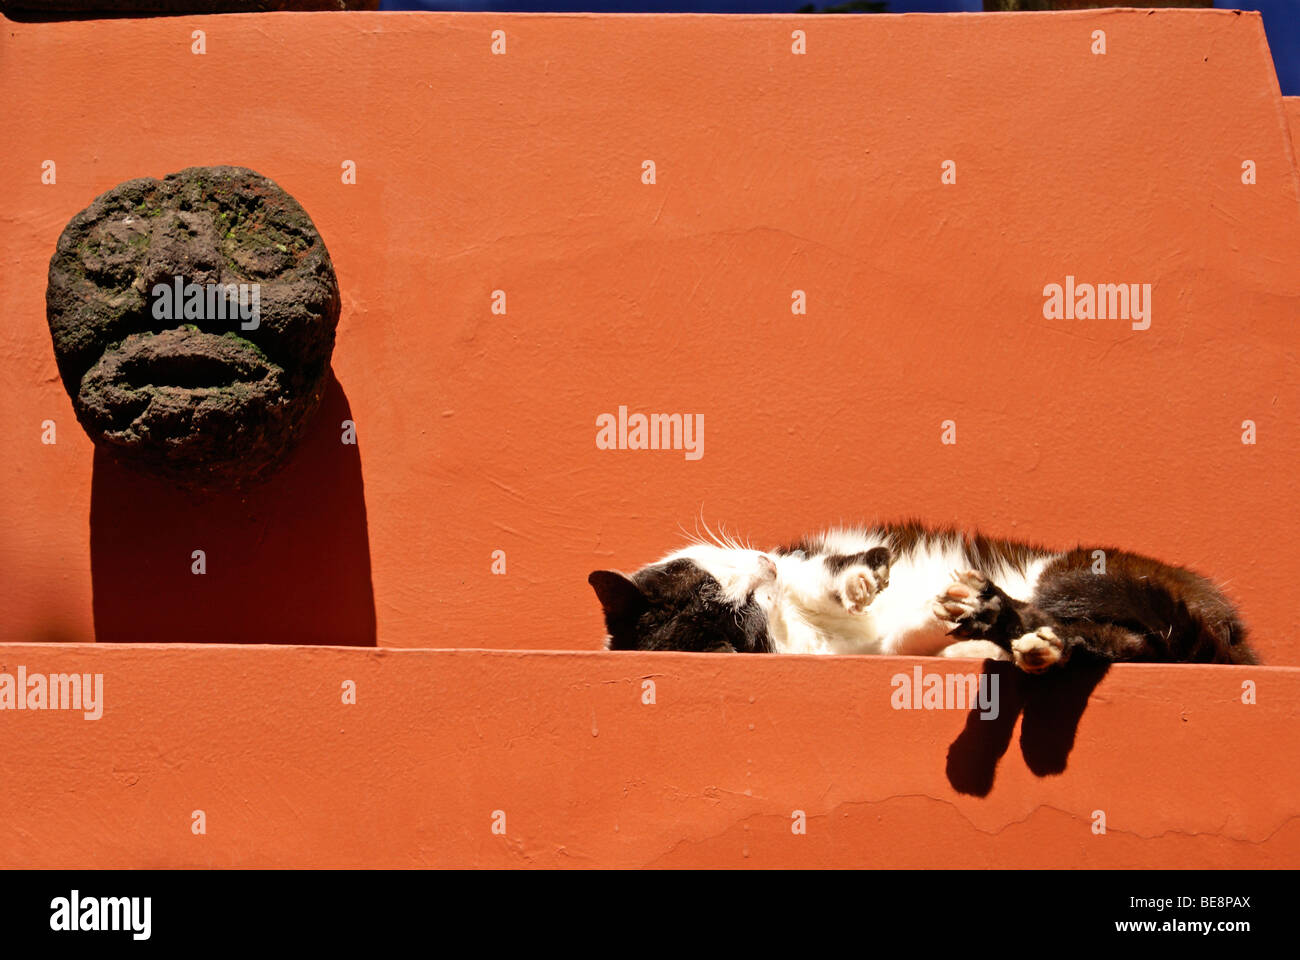 sleeping-cat-at-the-museo-frida-kahlo-al